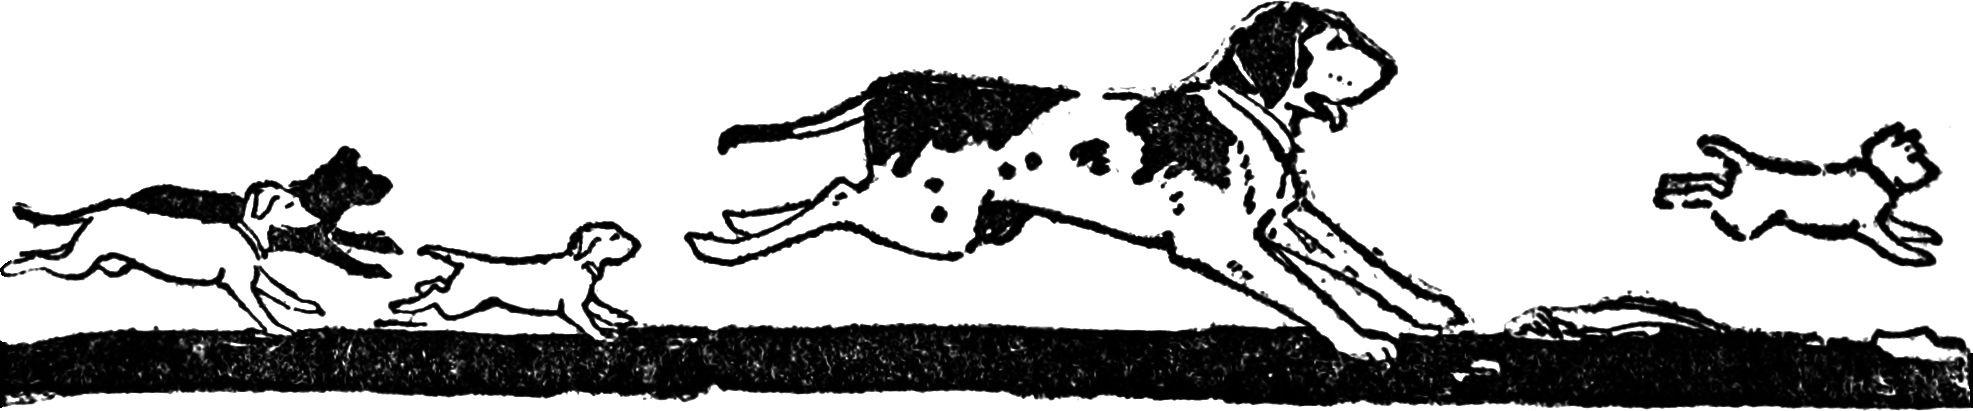 Illustration of dogs running